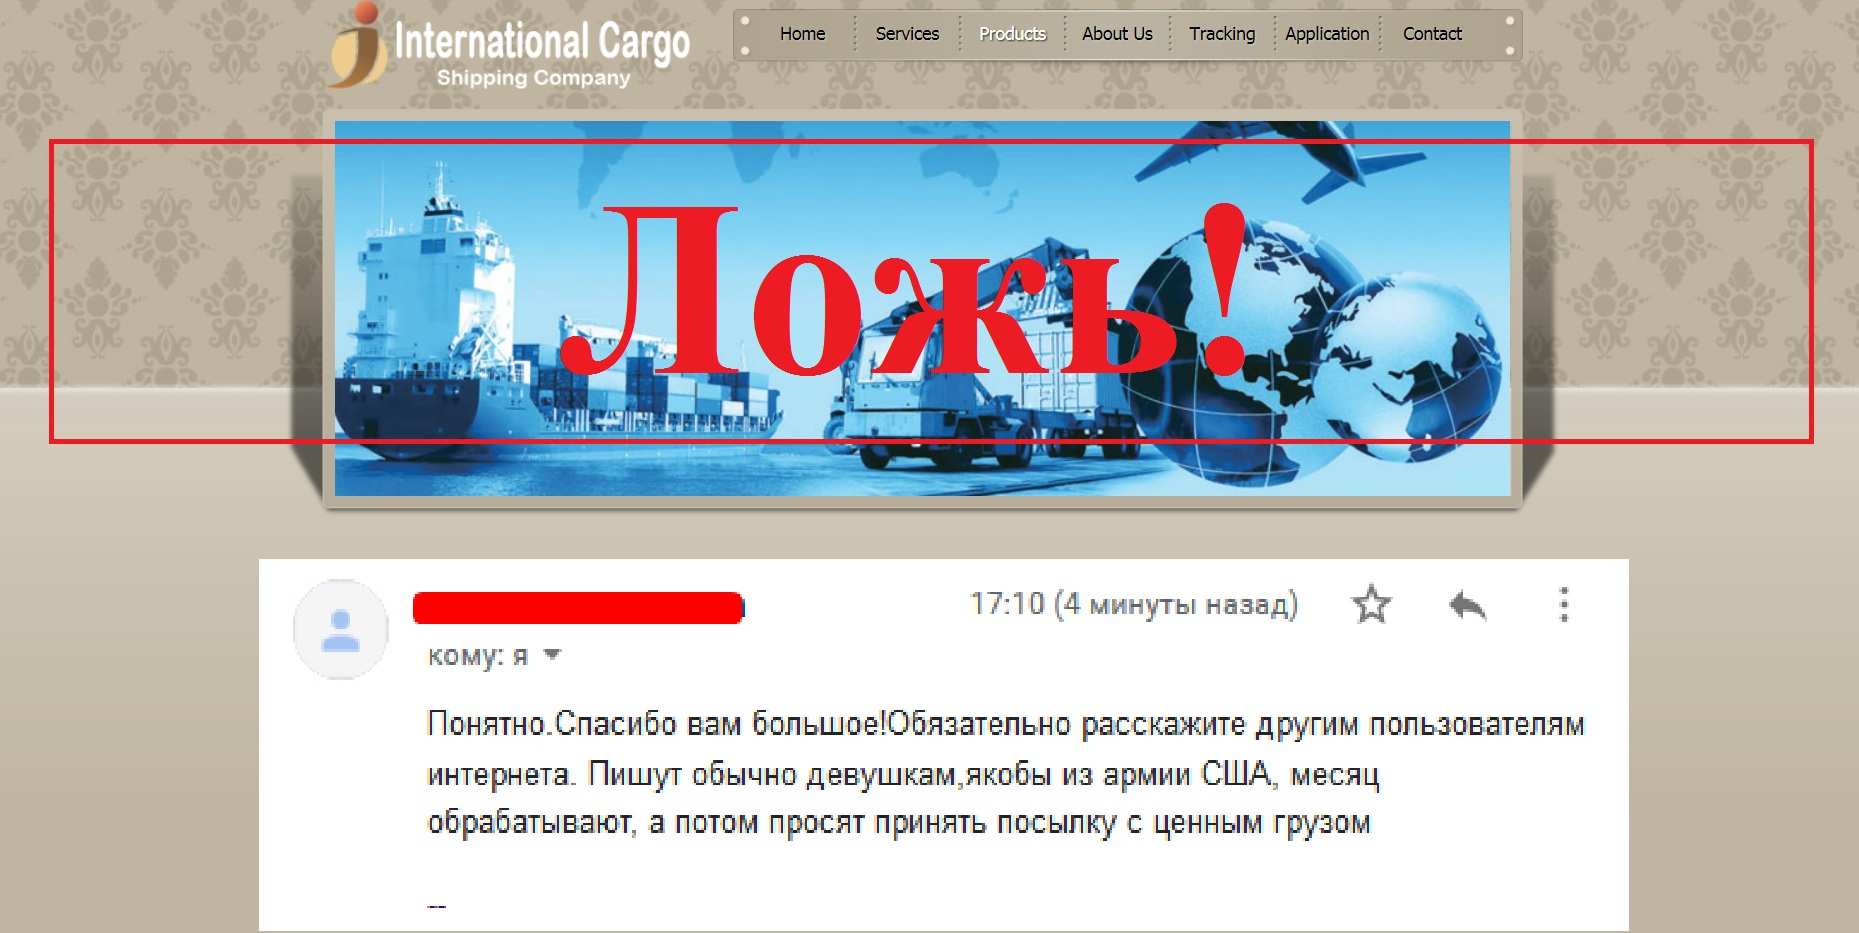 International Cargo – отзывы о сомнительной конторе